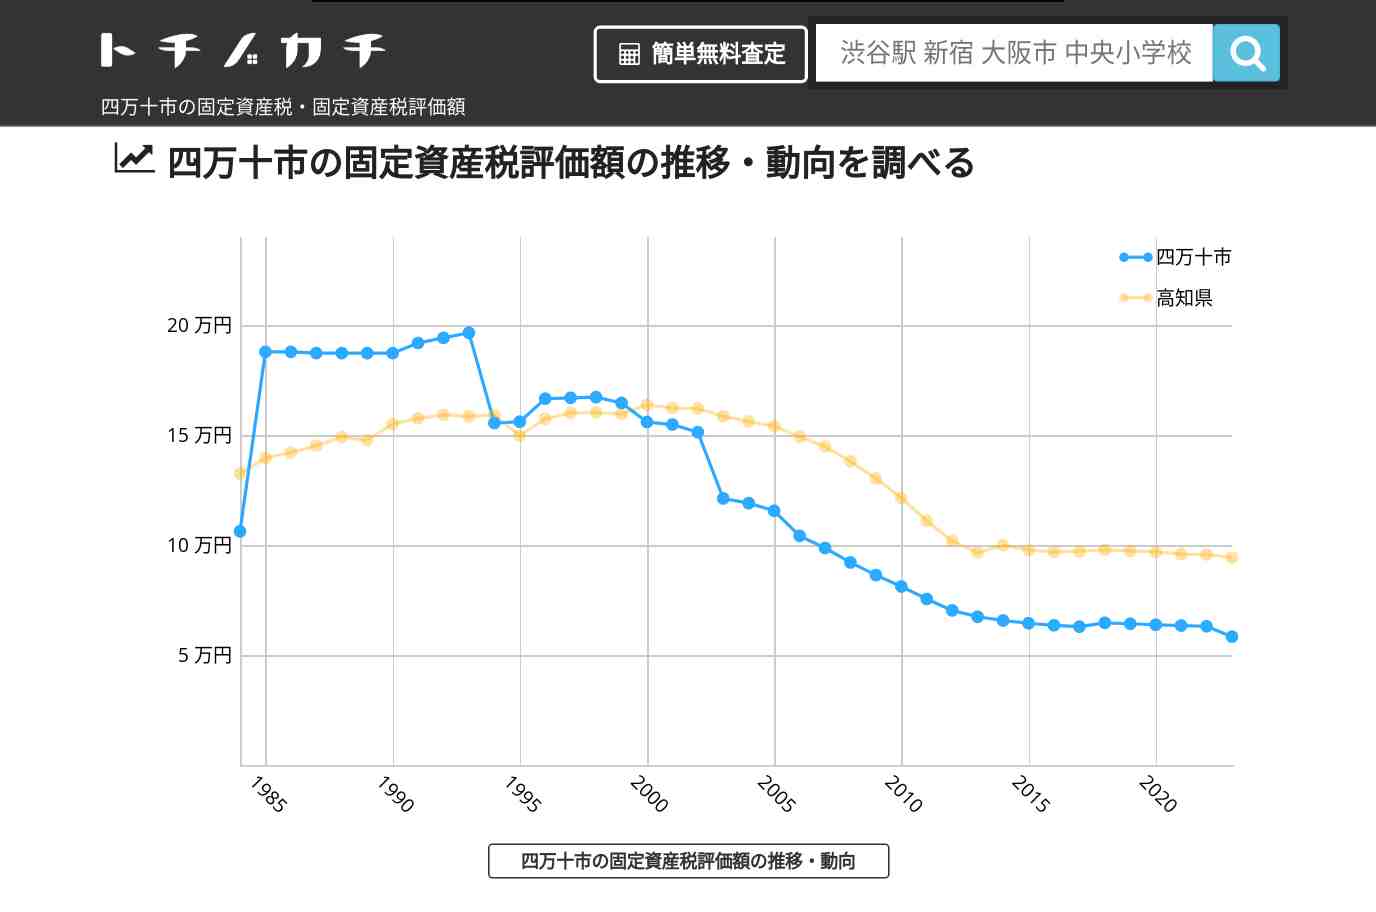 大用中学校(高知県 四万十市)周辺の固定資産税・固定資産税評価額 | トチノカチ